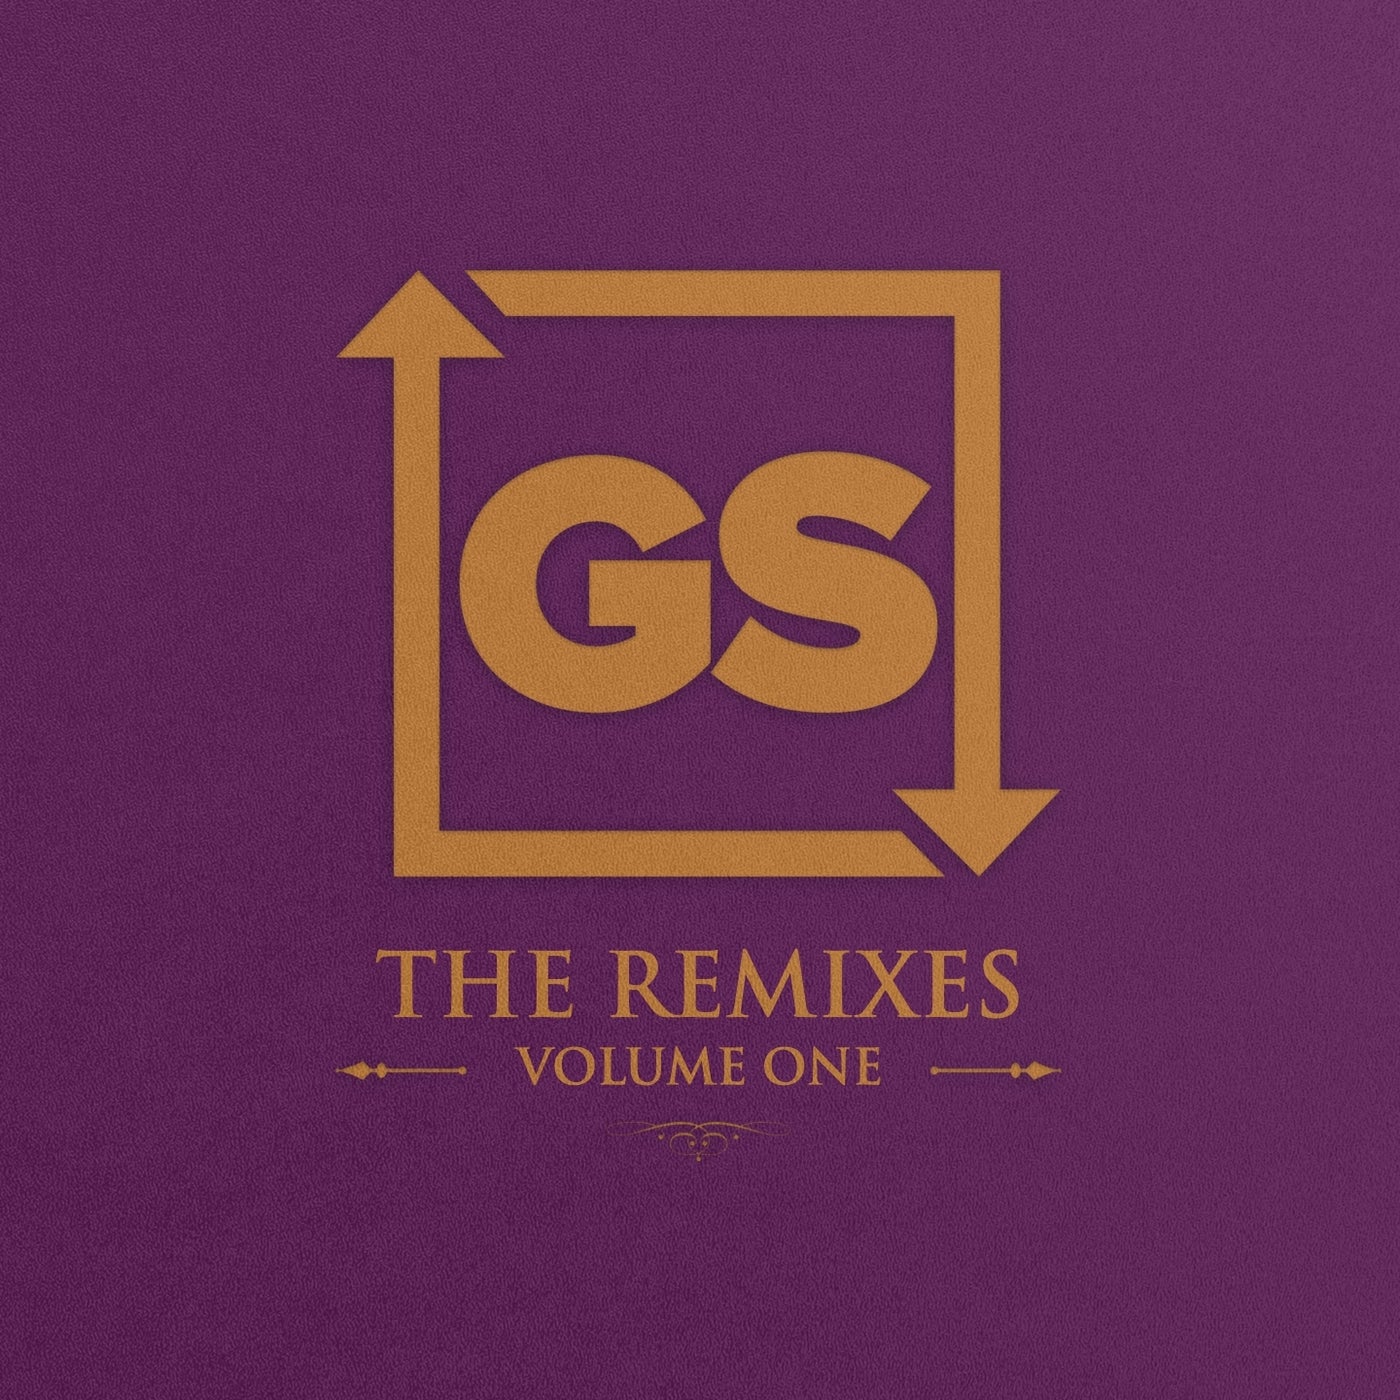 Garage Shared: The Remixes, Vol. 1